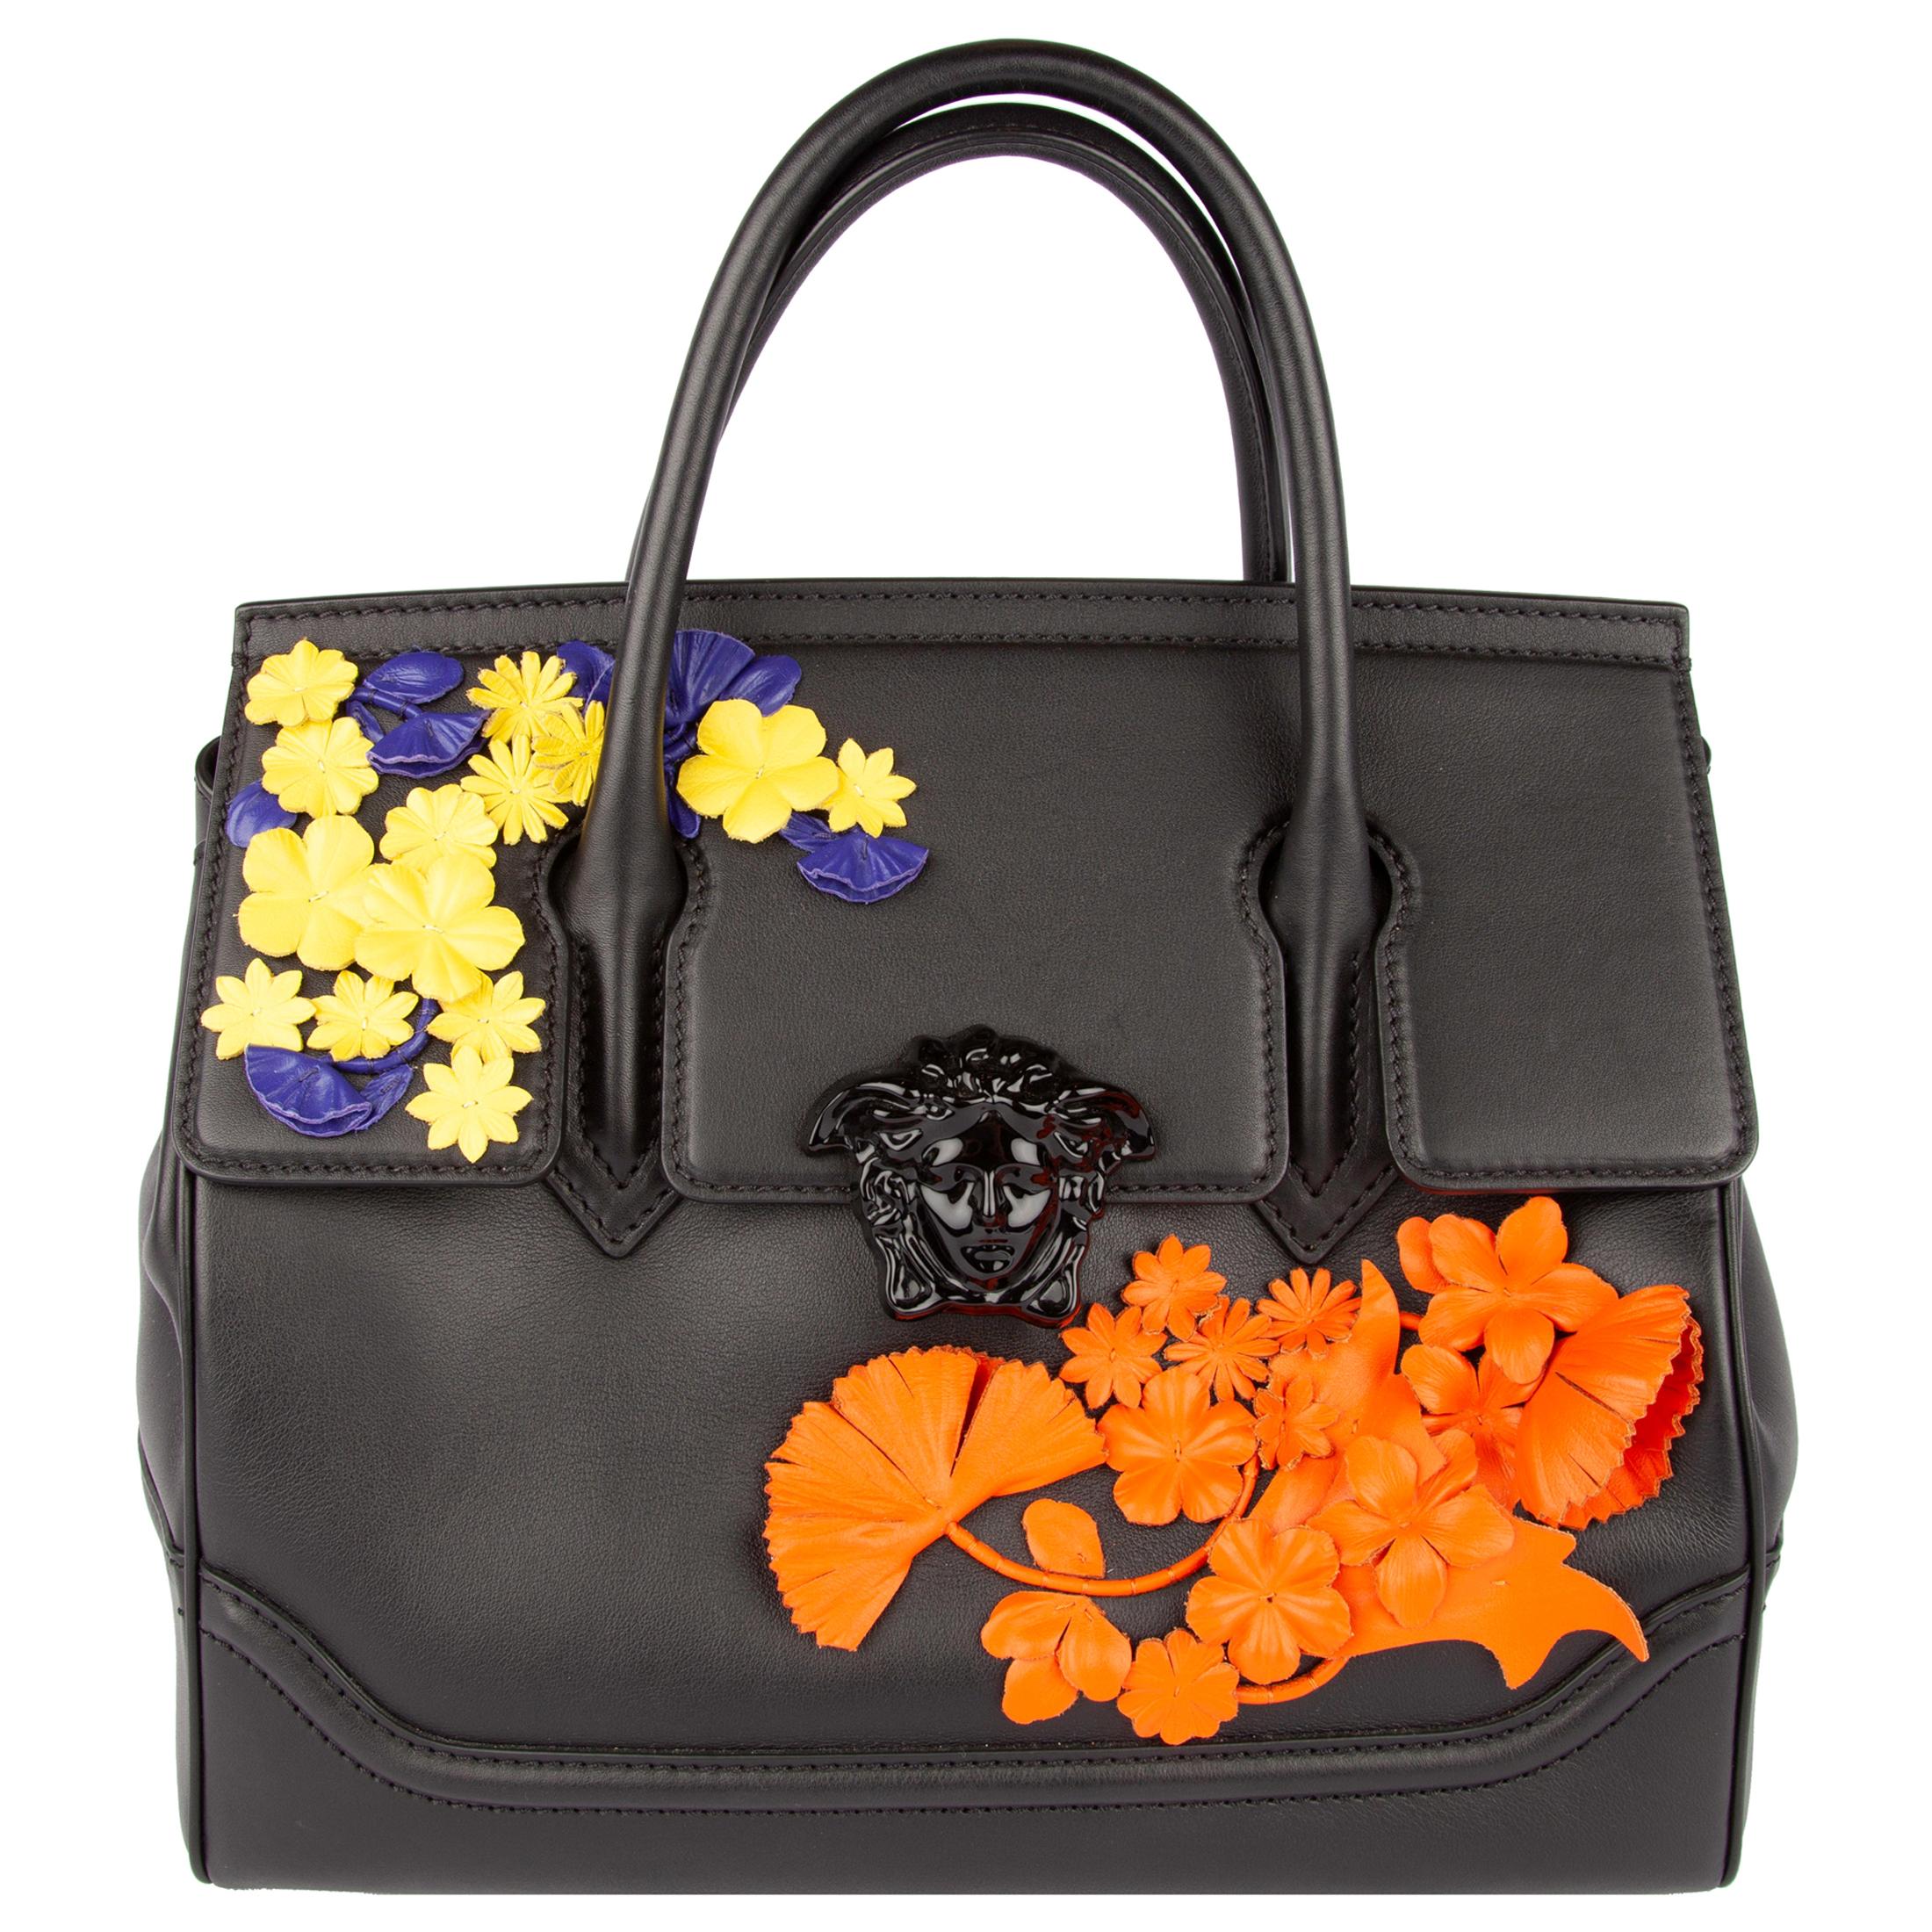 Versace Floral Medusa Leather Palazzo Empire Bag w/ 2 Detachable Shoulder Straps